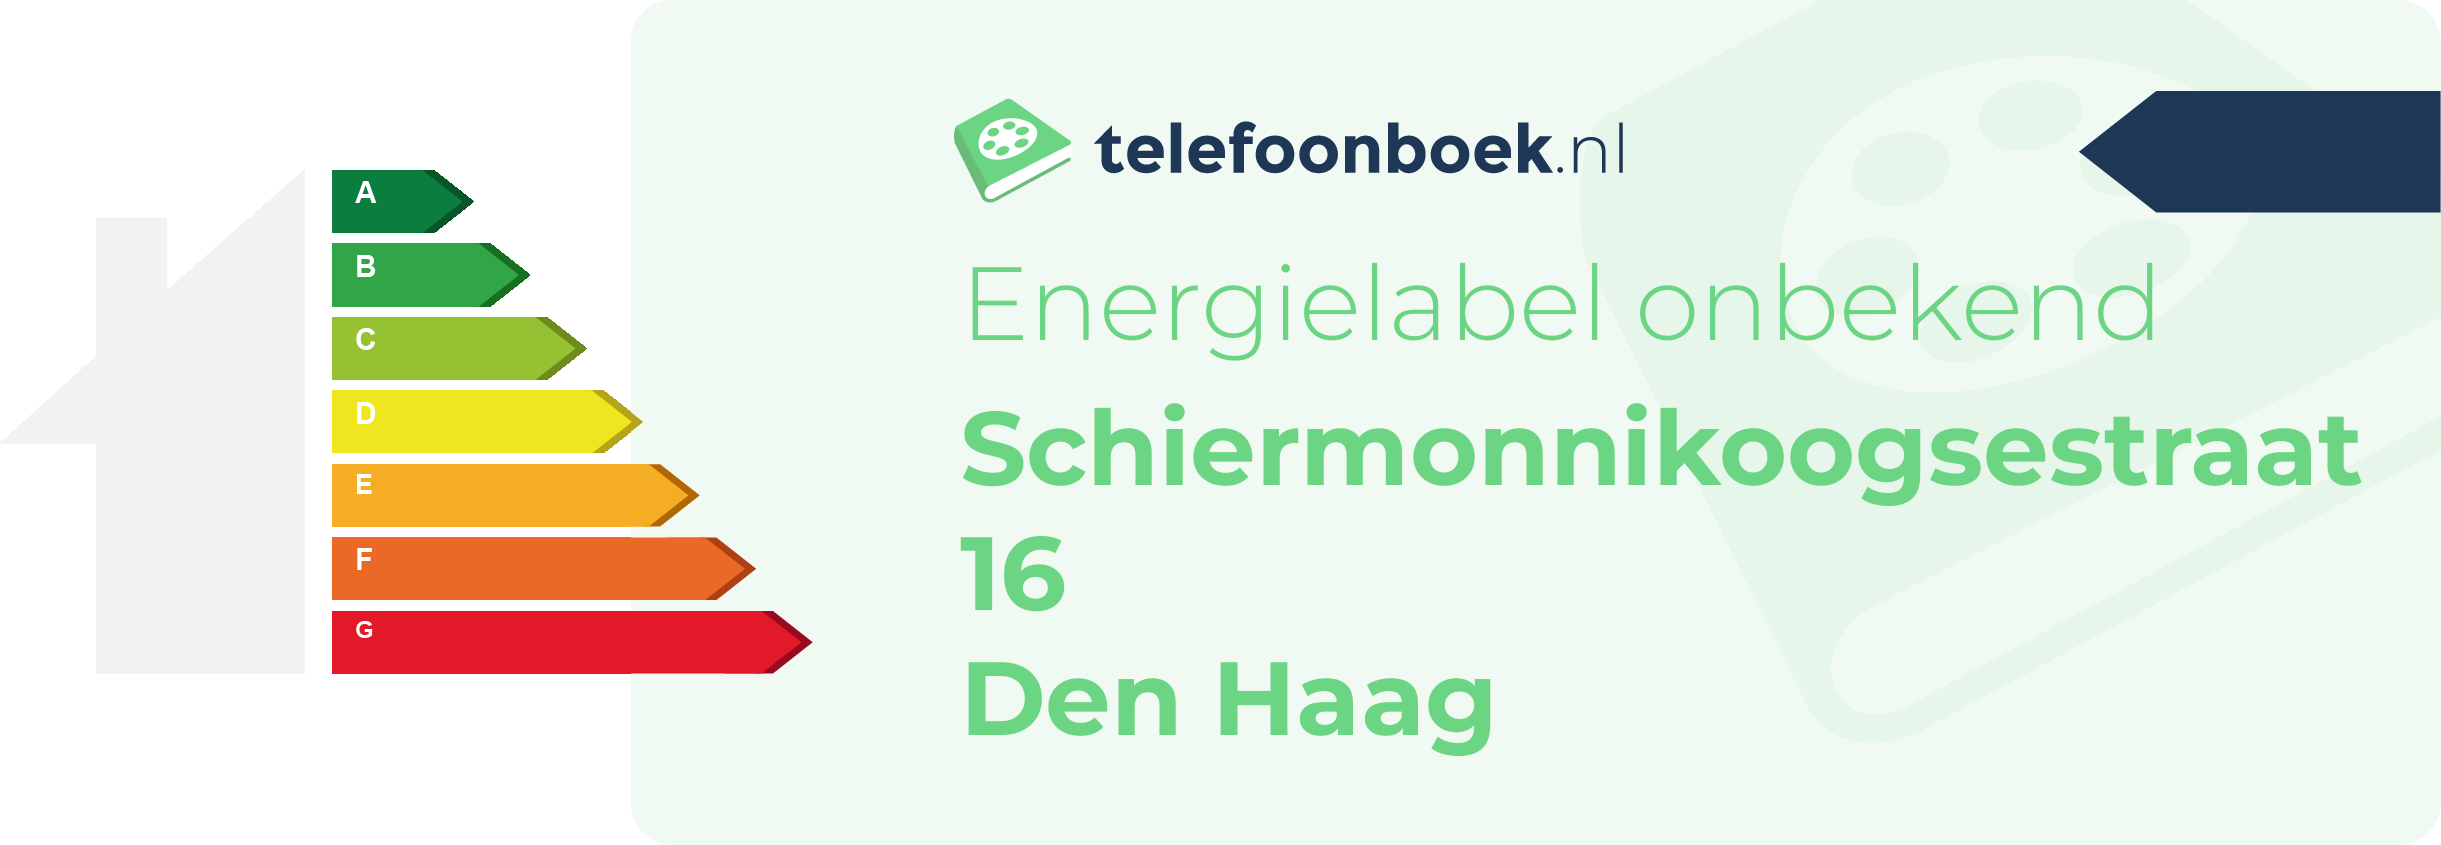 Energielabel Schiermonnikoogsestraat 16 Den Haag